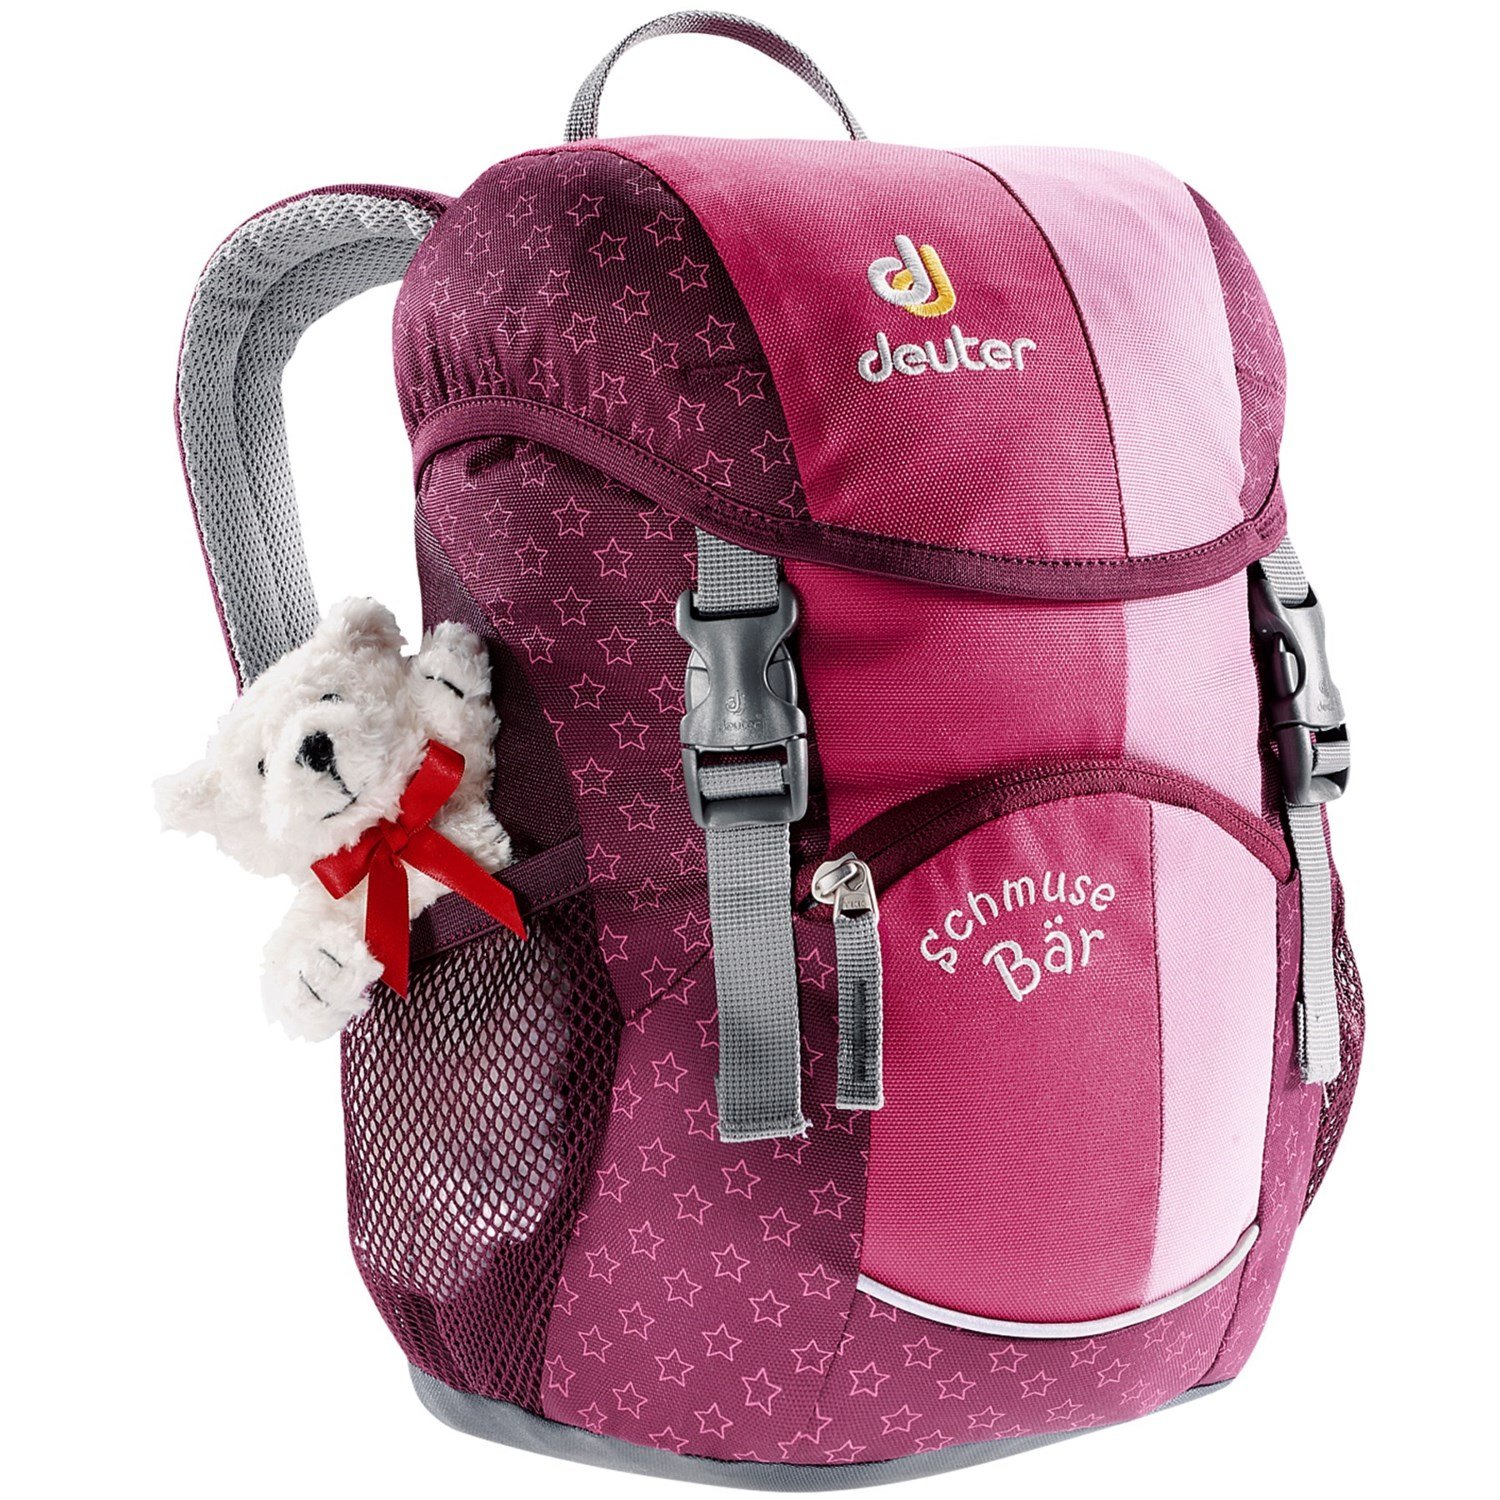 Велосипедный рюкзак Deuter Schmusebar, детский, 34х20х16, 8 л, розовый, 36003_5040